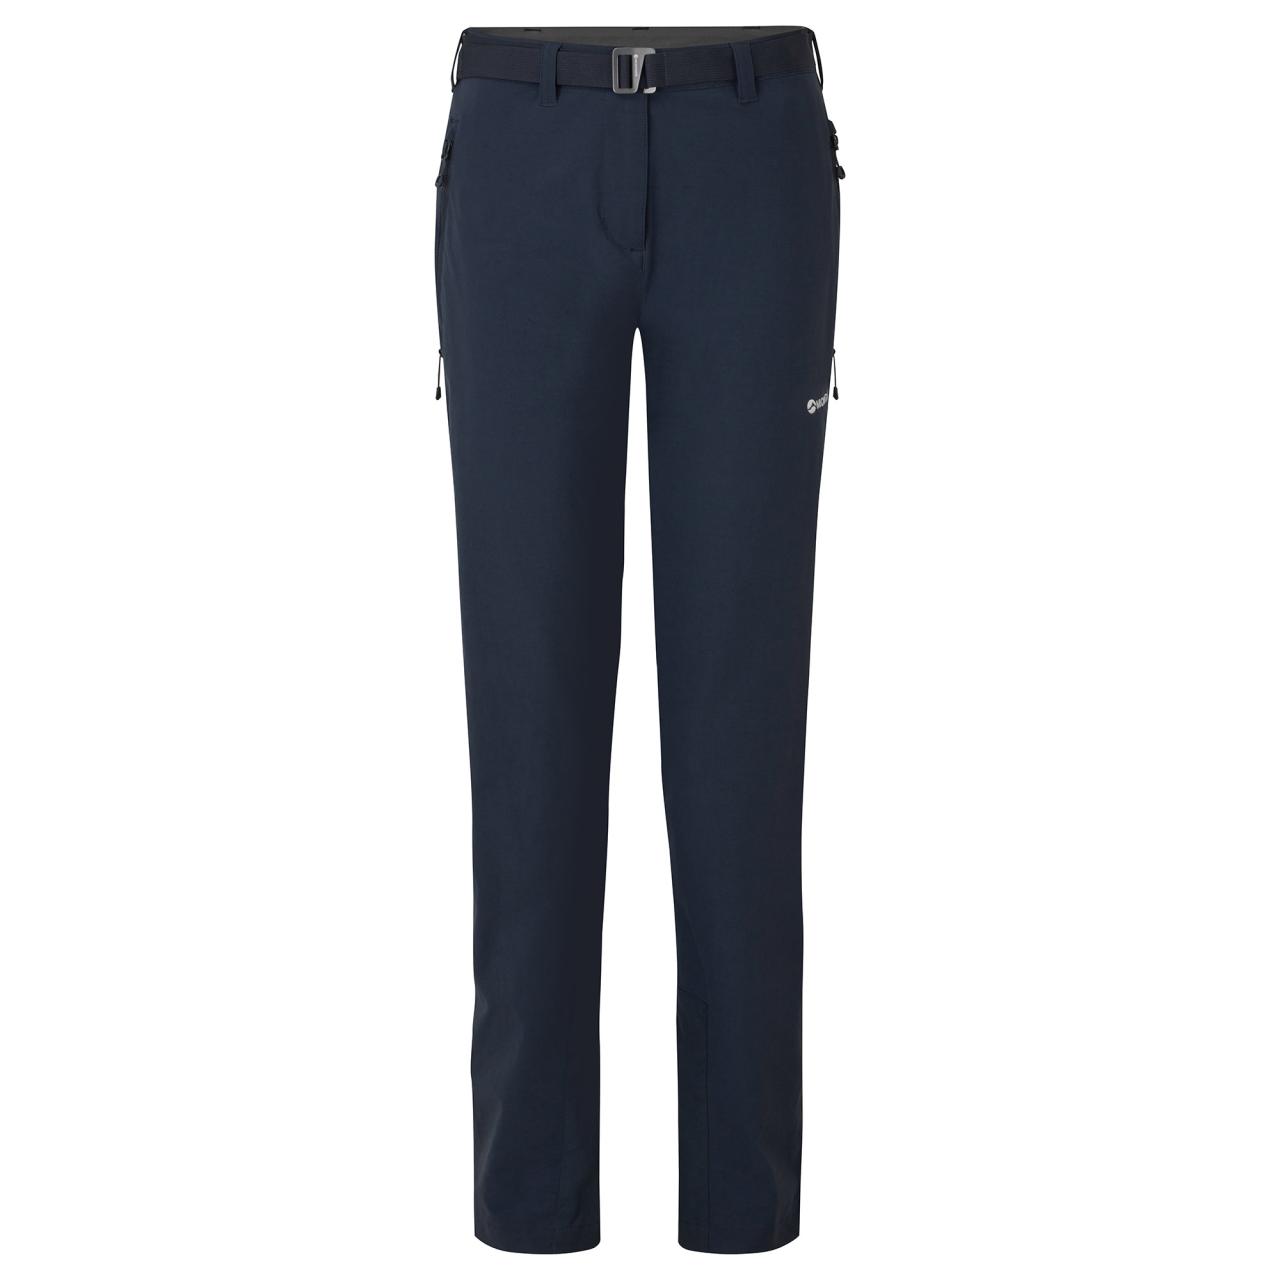 FEM TERRA STRETCH PANTS REG LEG-ECLIPSE BLUE-UK16/XL dámské kalhoty modré